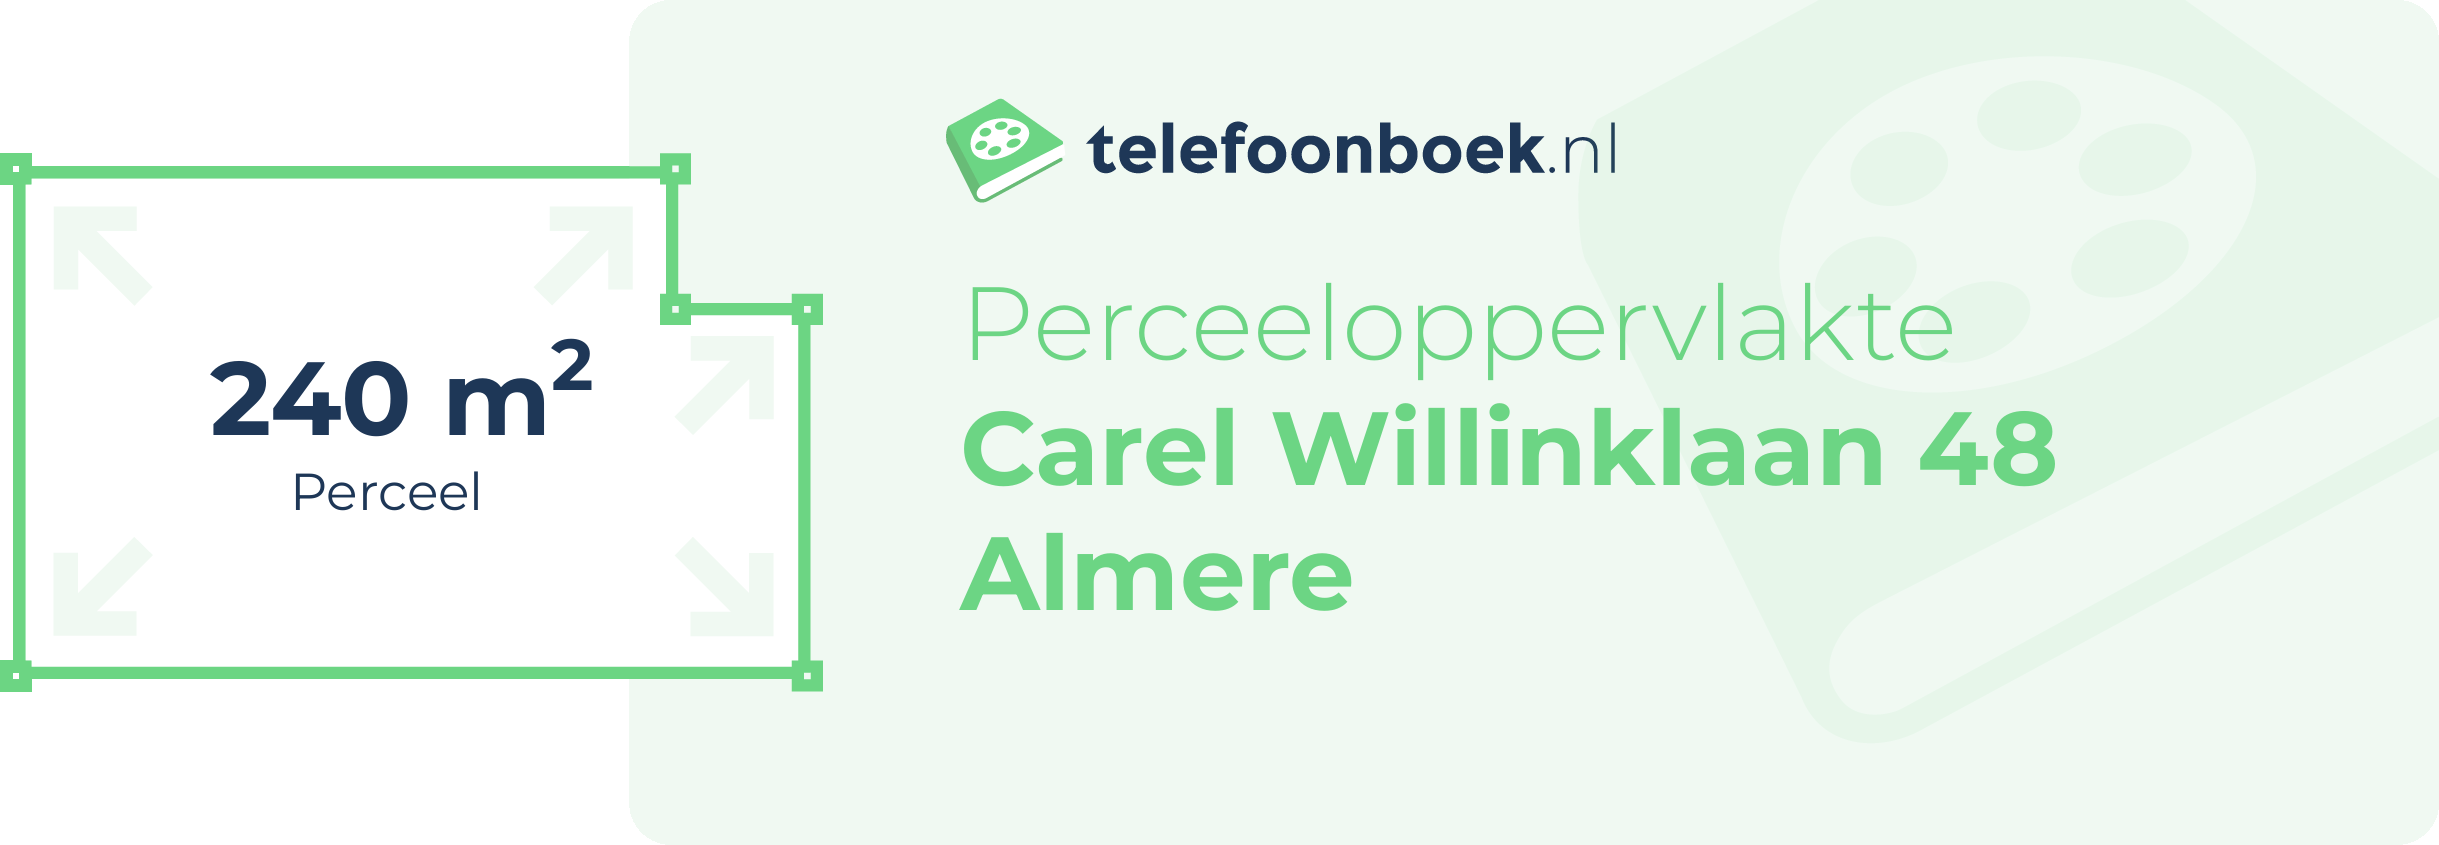 Perceeloppervlakte Carel Willinklaan 48 Almere